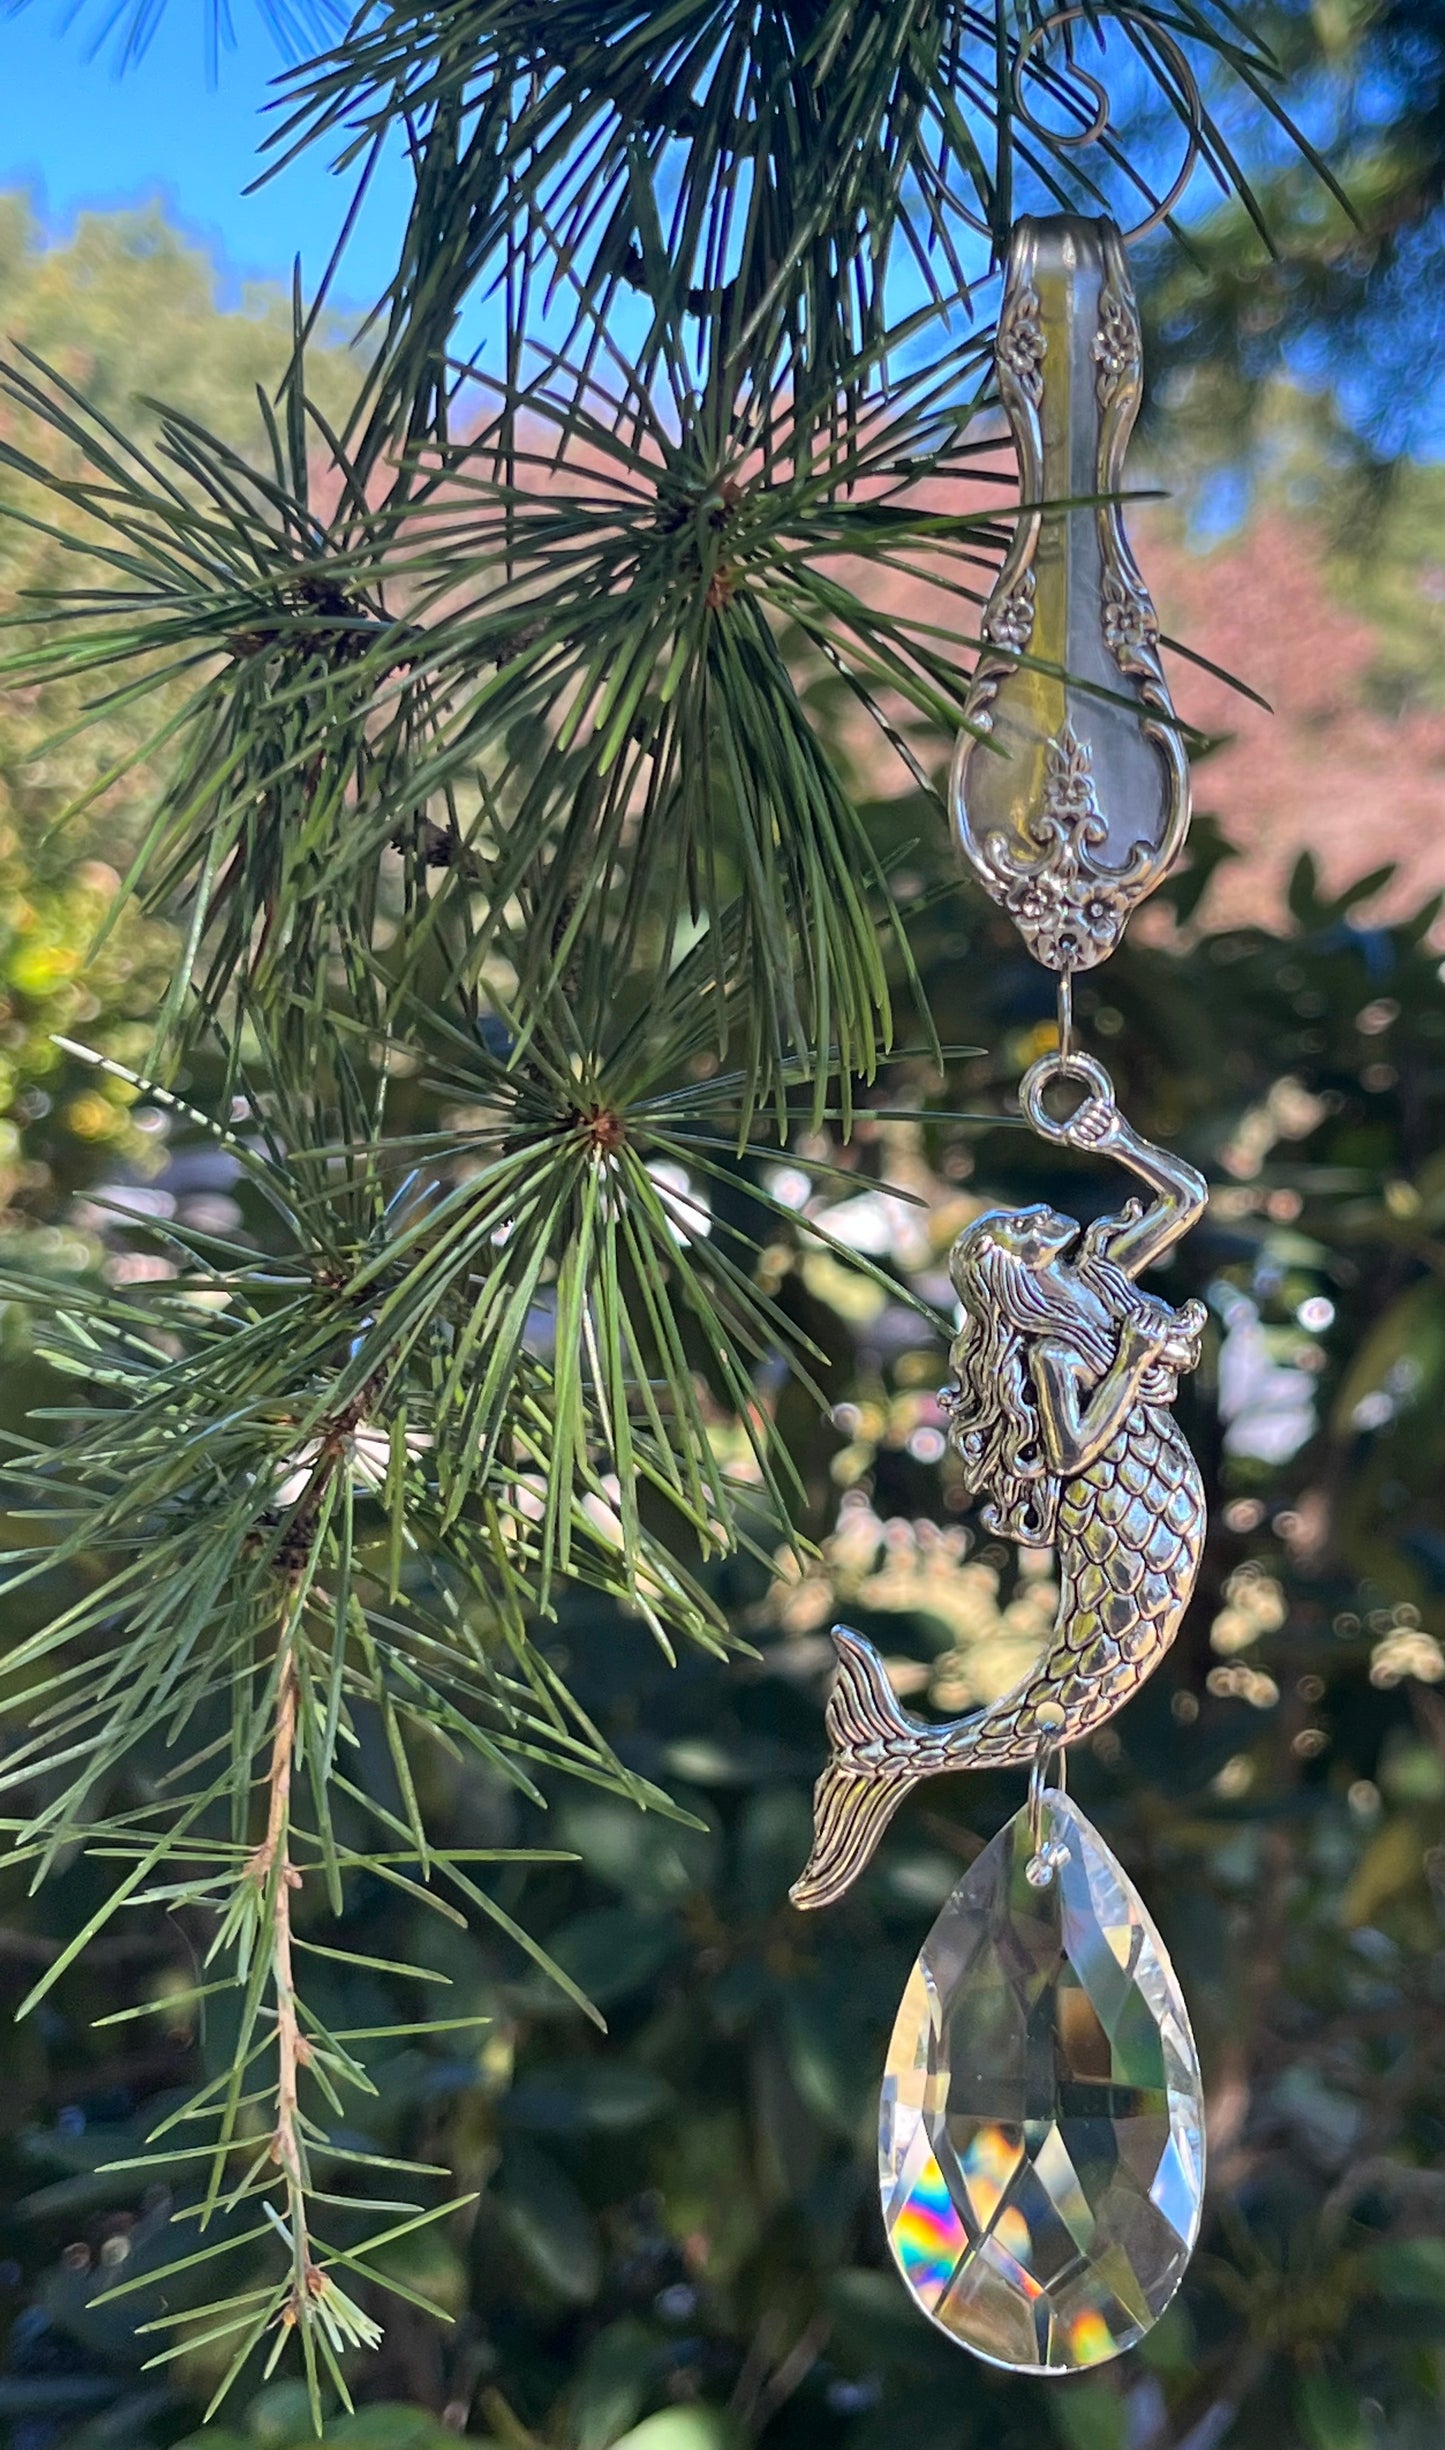 Mermaid -Vintage Silverware Ornament with Large crystal